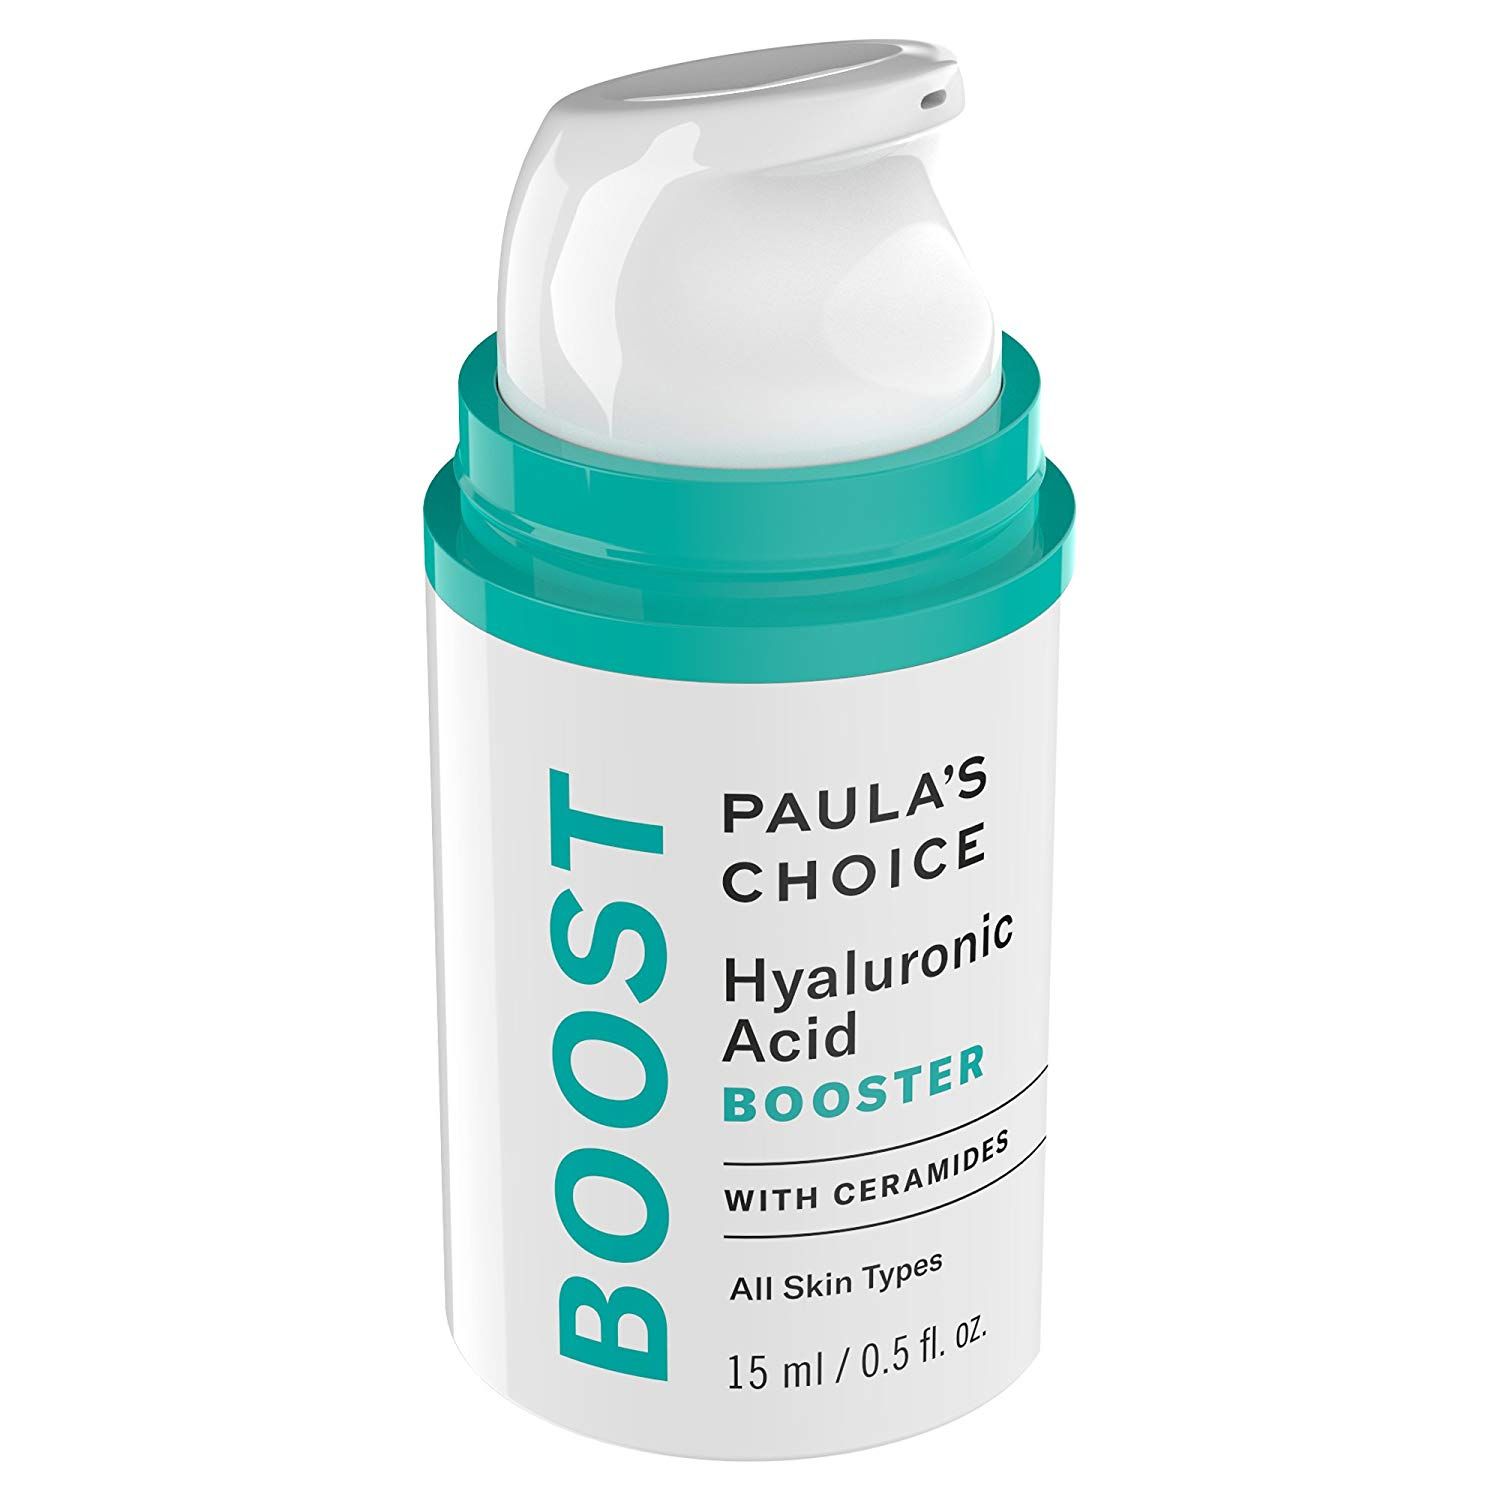  Tinh chất tăng cường dưỡng ẩm - Paula's Choice Hyaluronic Acid Booster (15ml) 